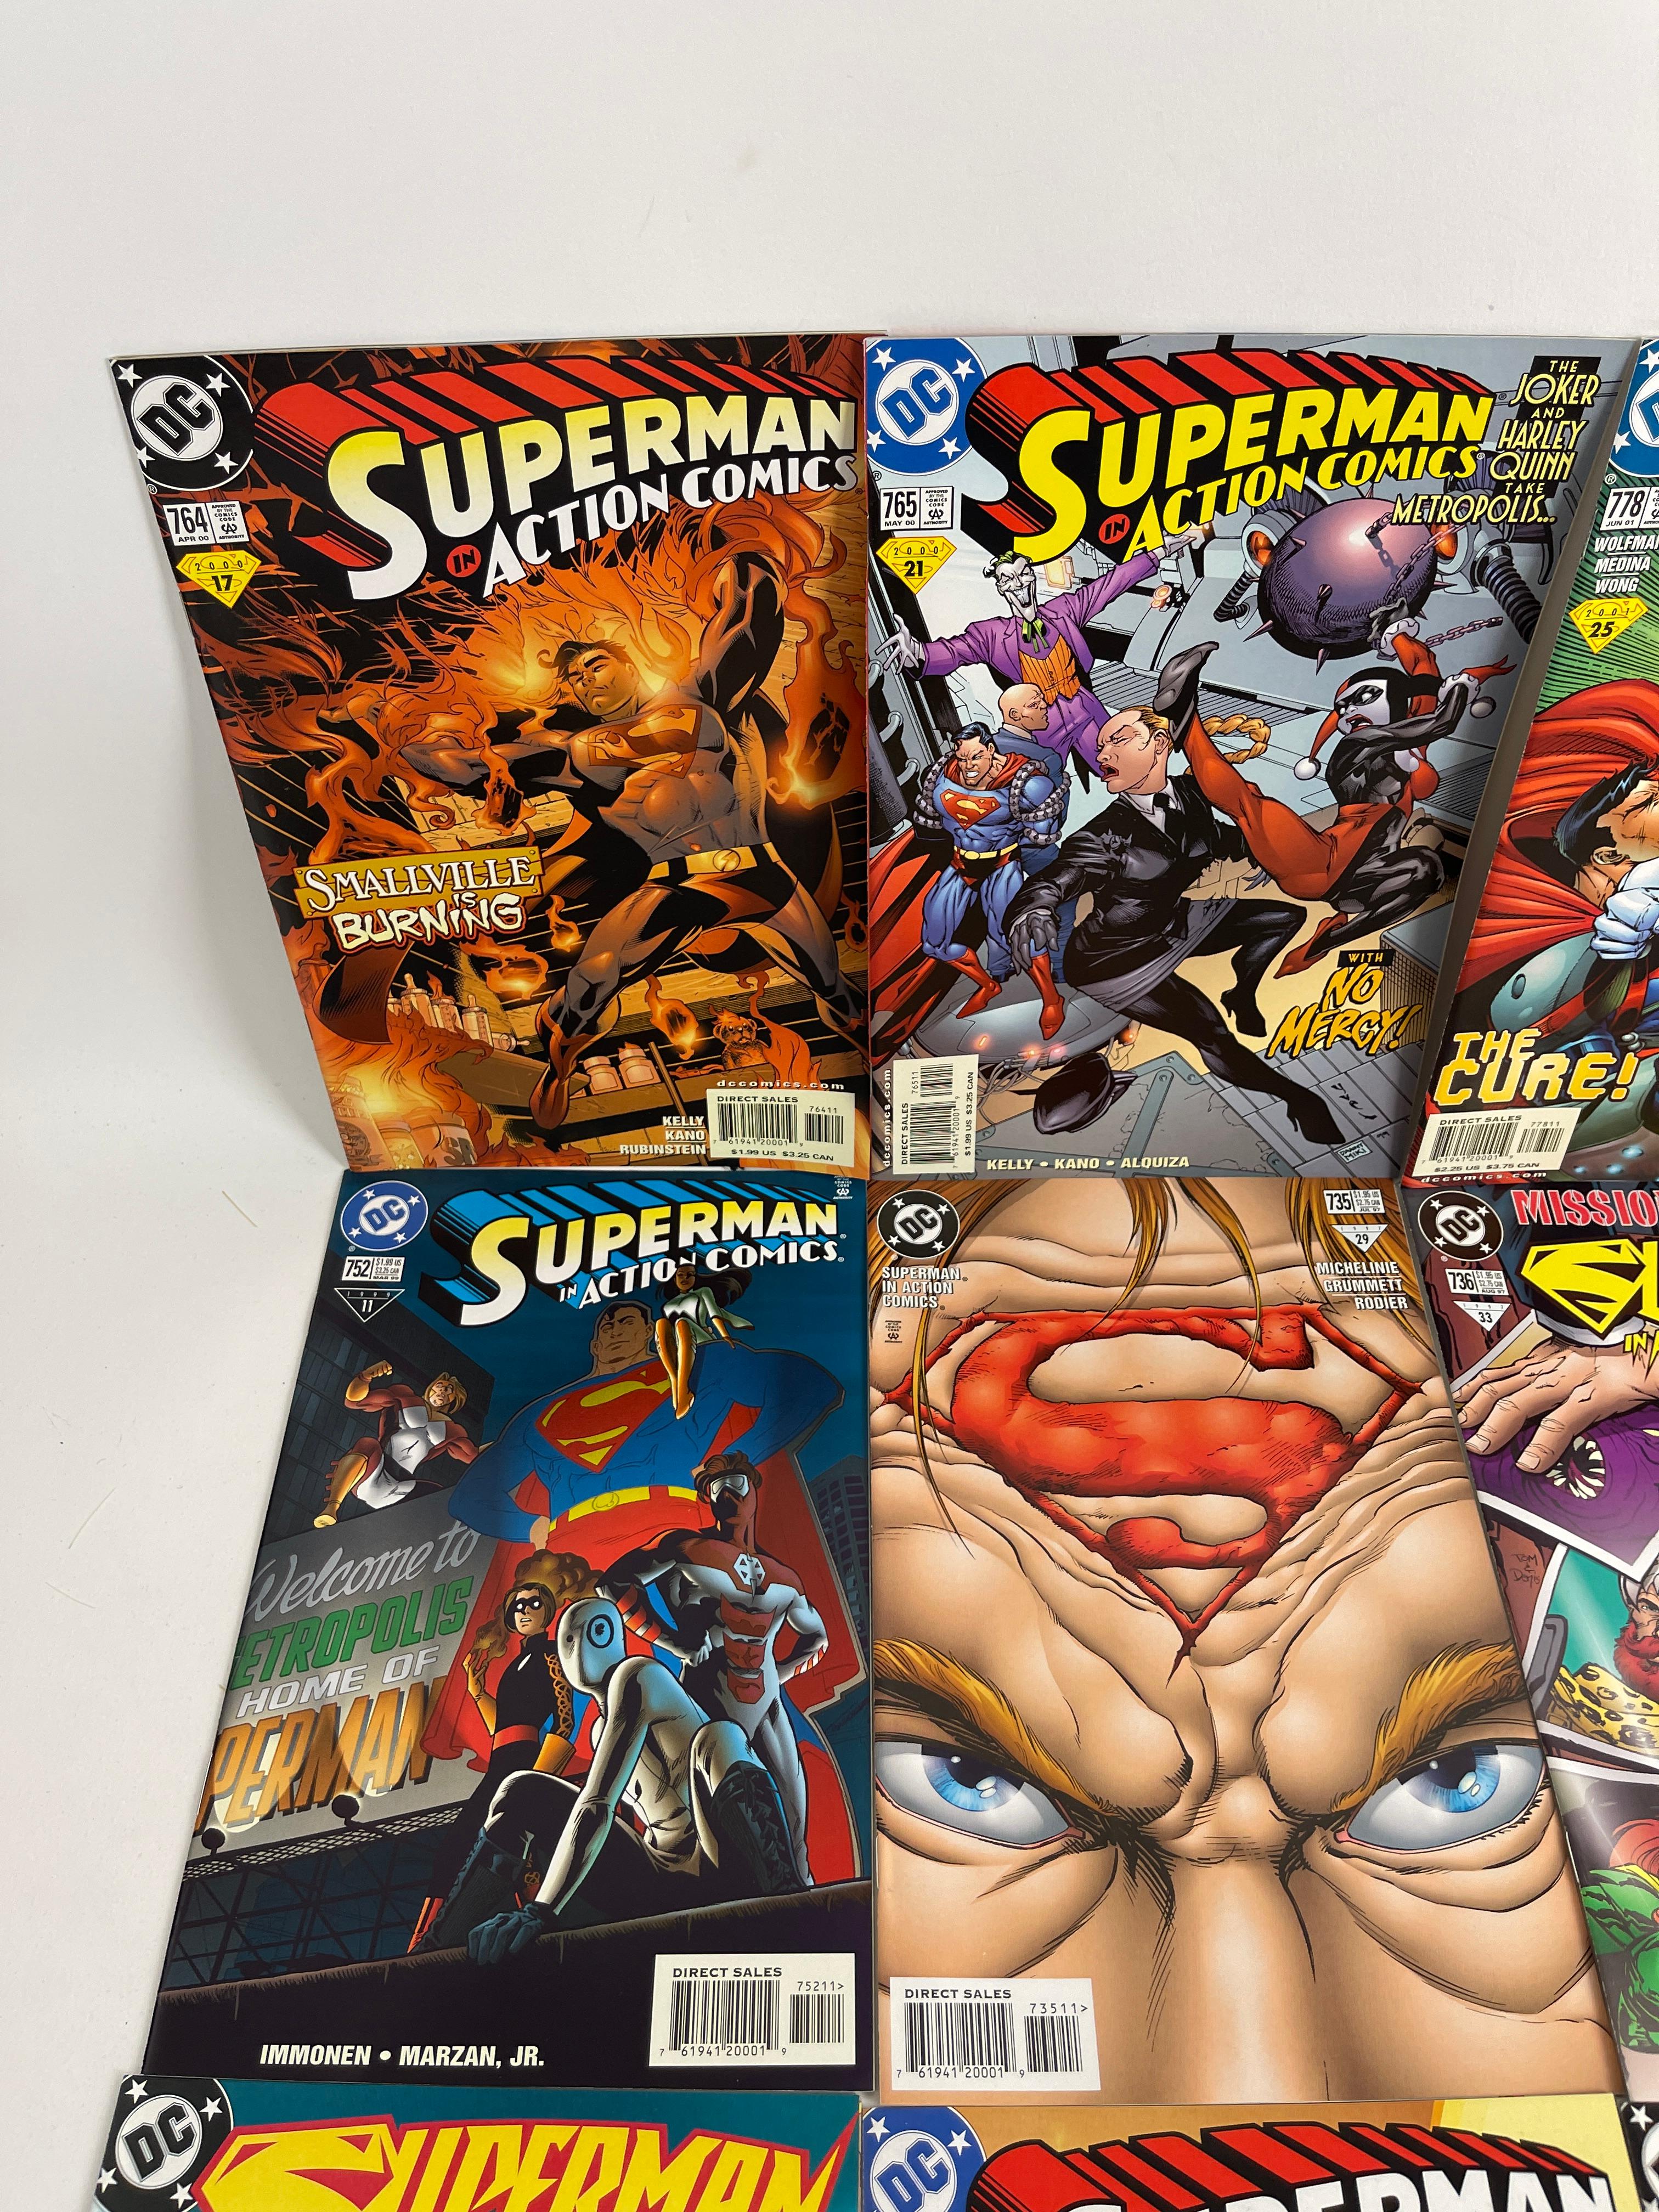 Vintage comic book Superman collection lot 20 DC comics